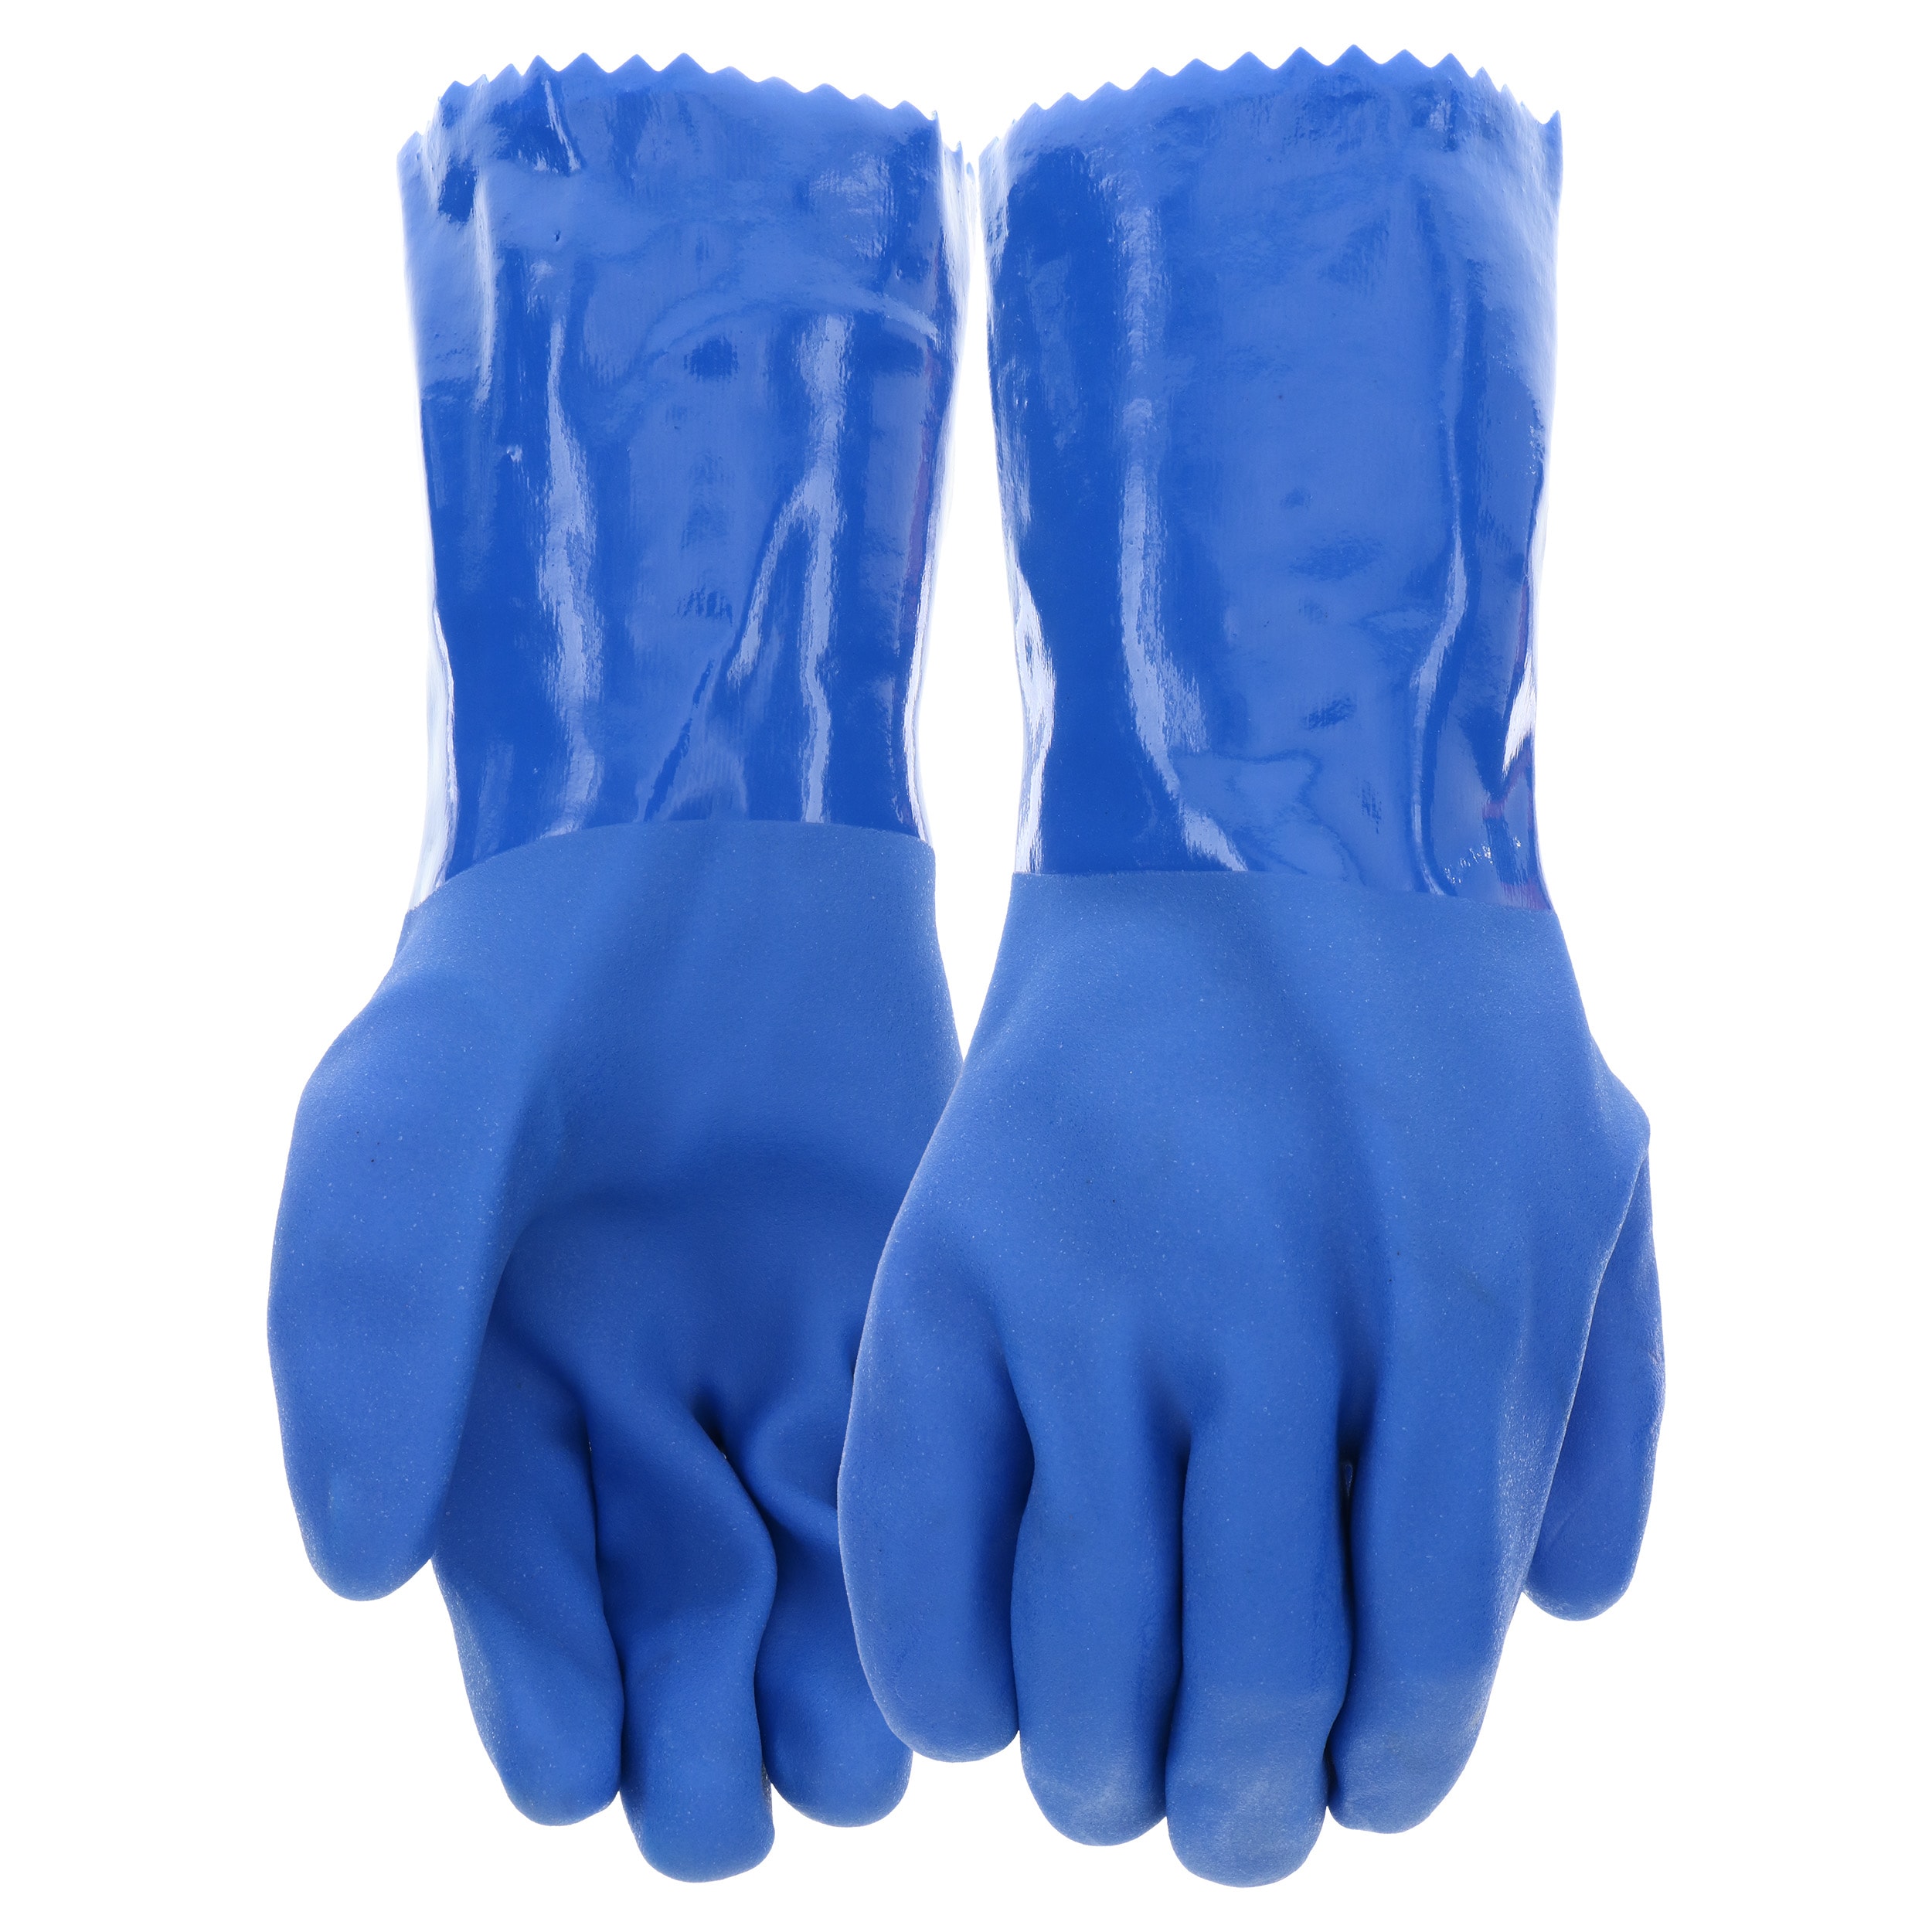 Blue Hawk Work Gloves at Lowes.com